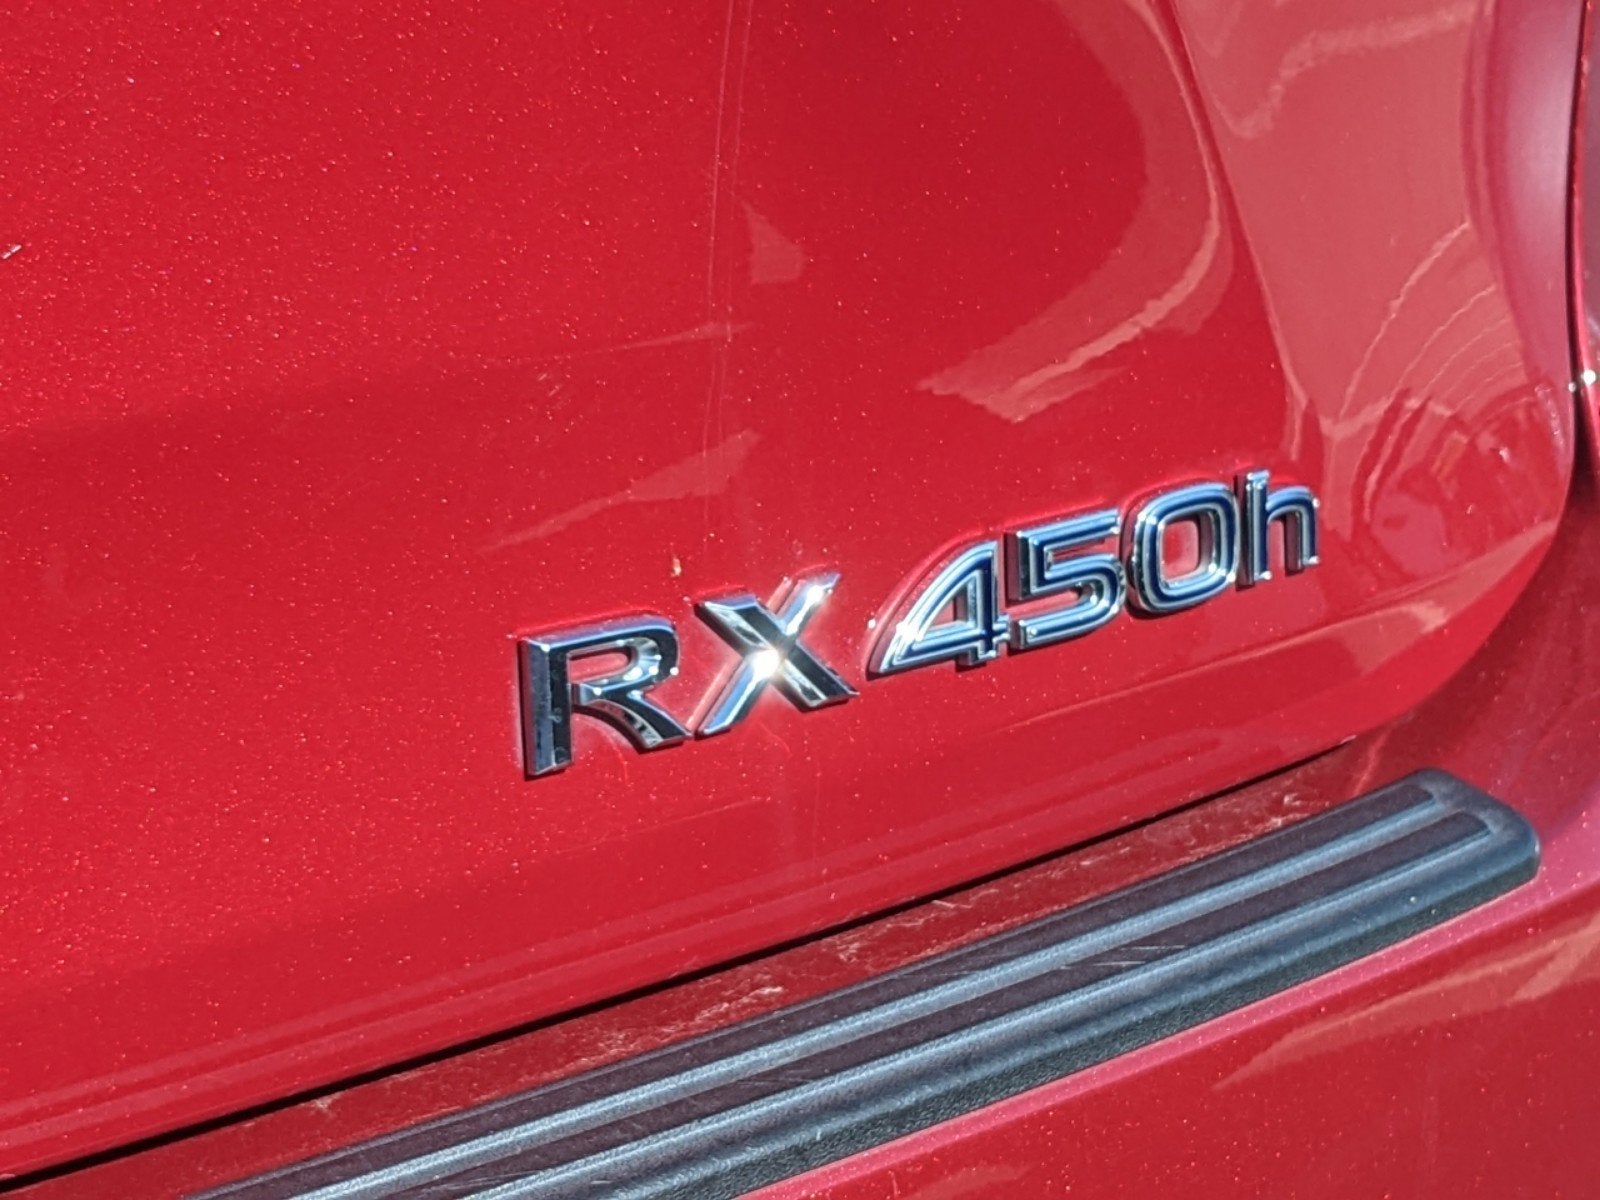 2017 Lexus RX 450h